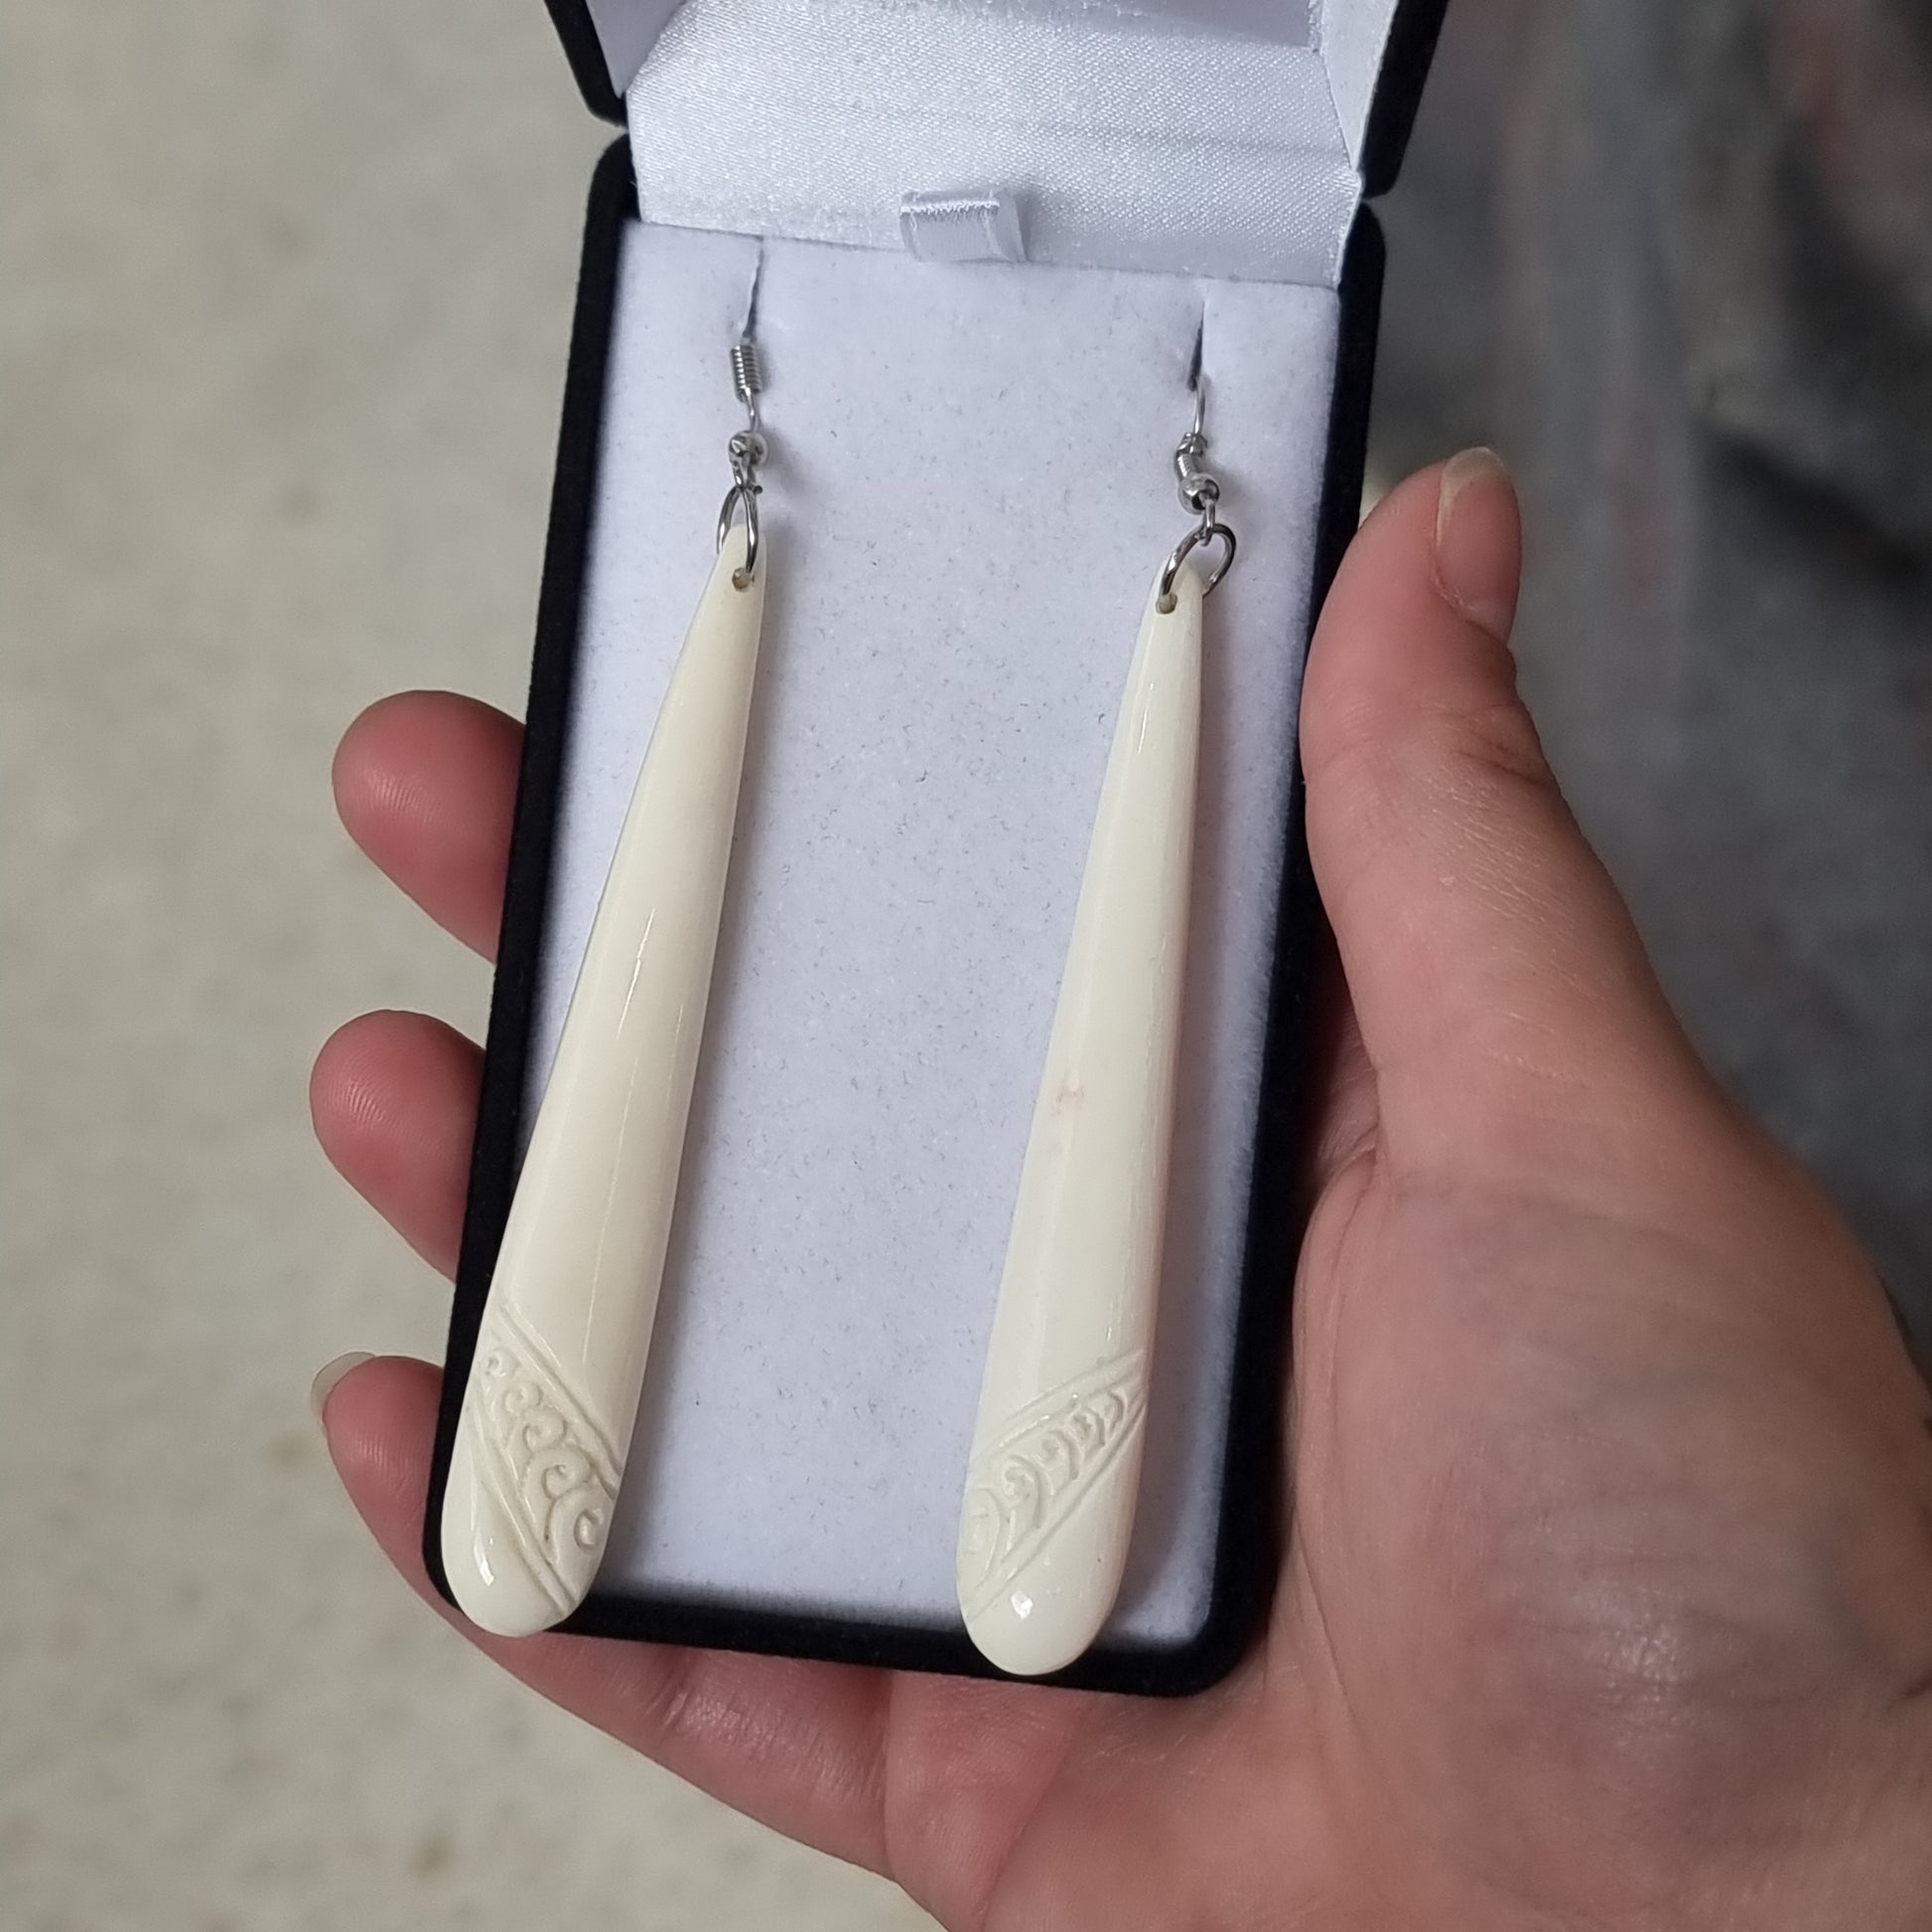 Bone earrings - Rivendell Shop